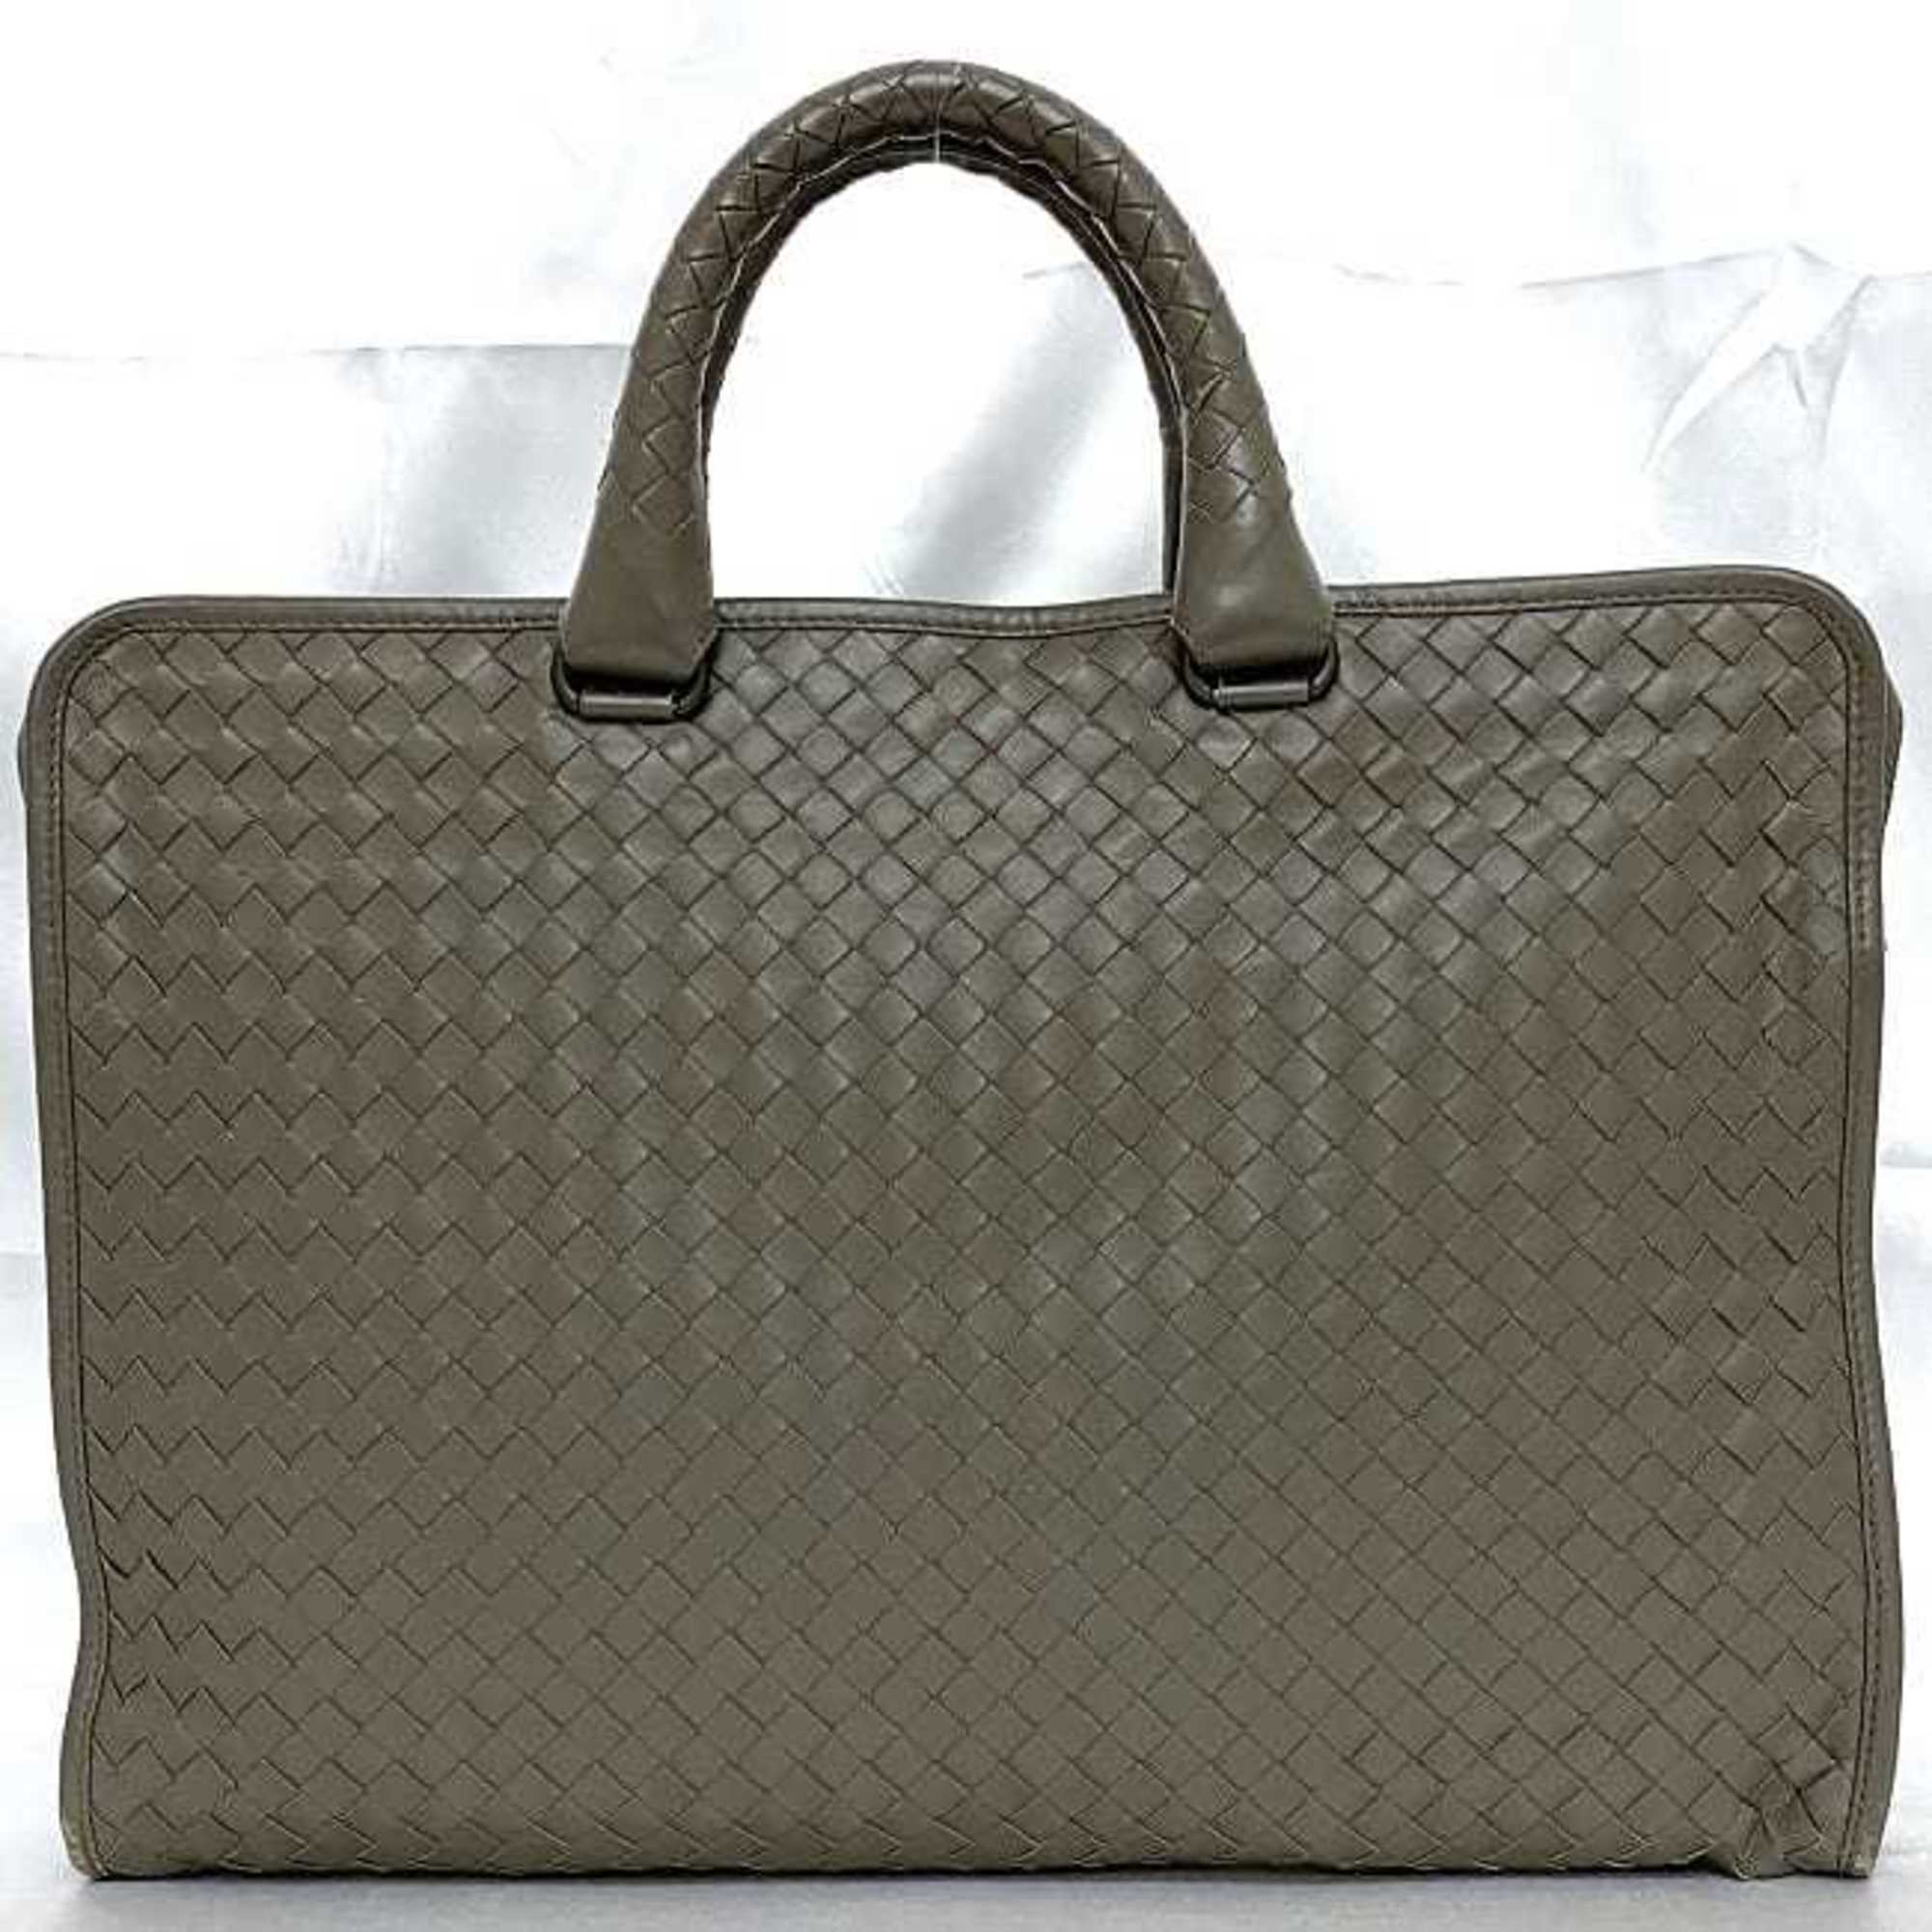 Bottega Veneta bag grey intrecciato ec-20501 leather BOTTEGA VENETA men's women's retro a4